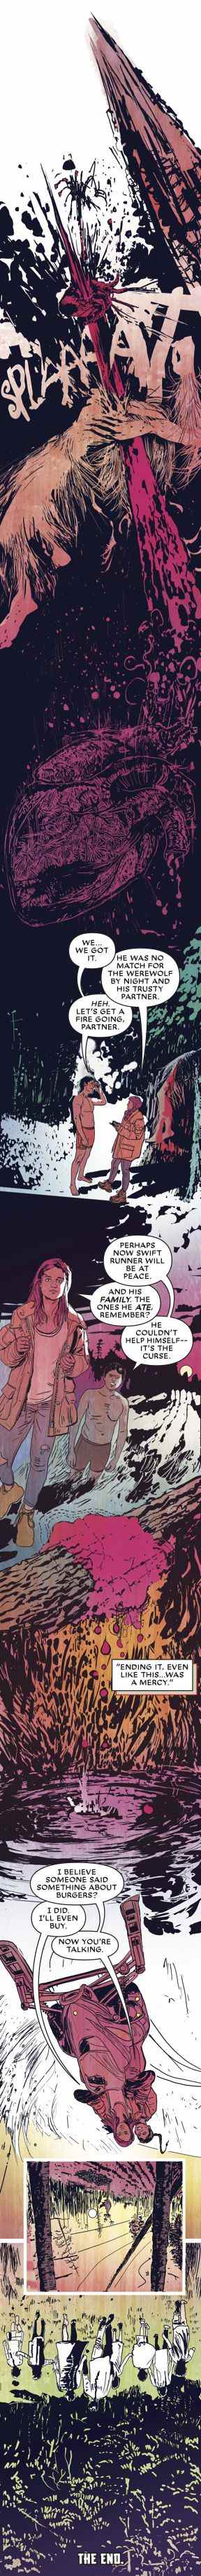 Jake et Molly s'éloignent au coucher du soleil après avoir posé le Wendingo pour se reposer dans Marvel Infinity's Werewolf by Night.